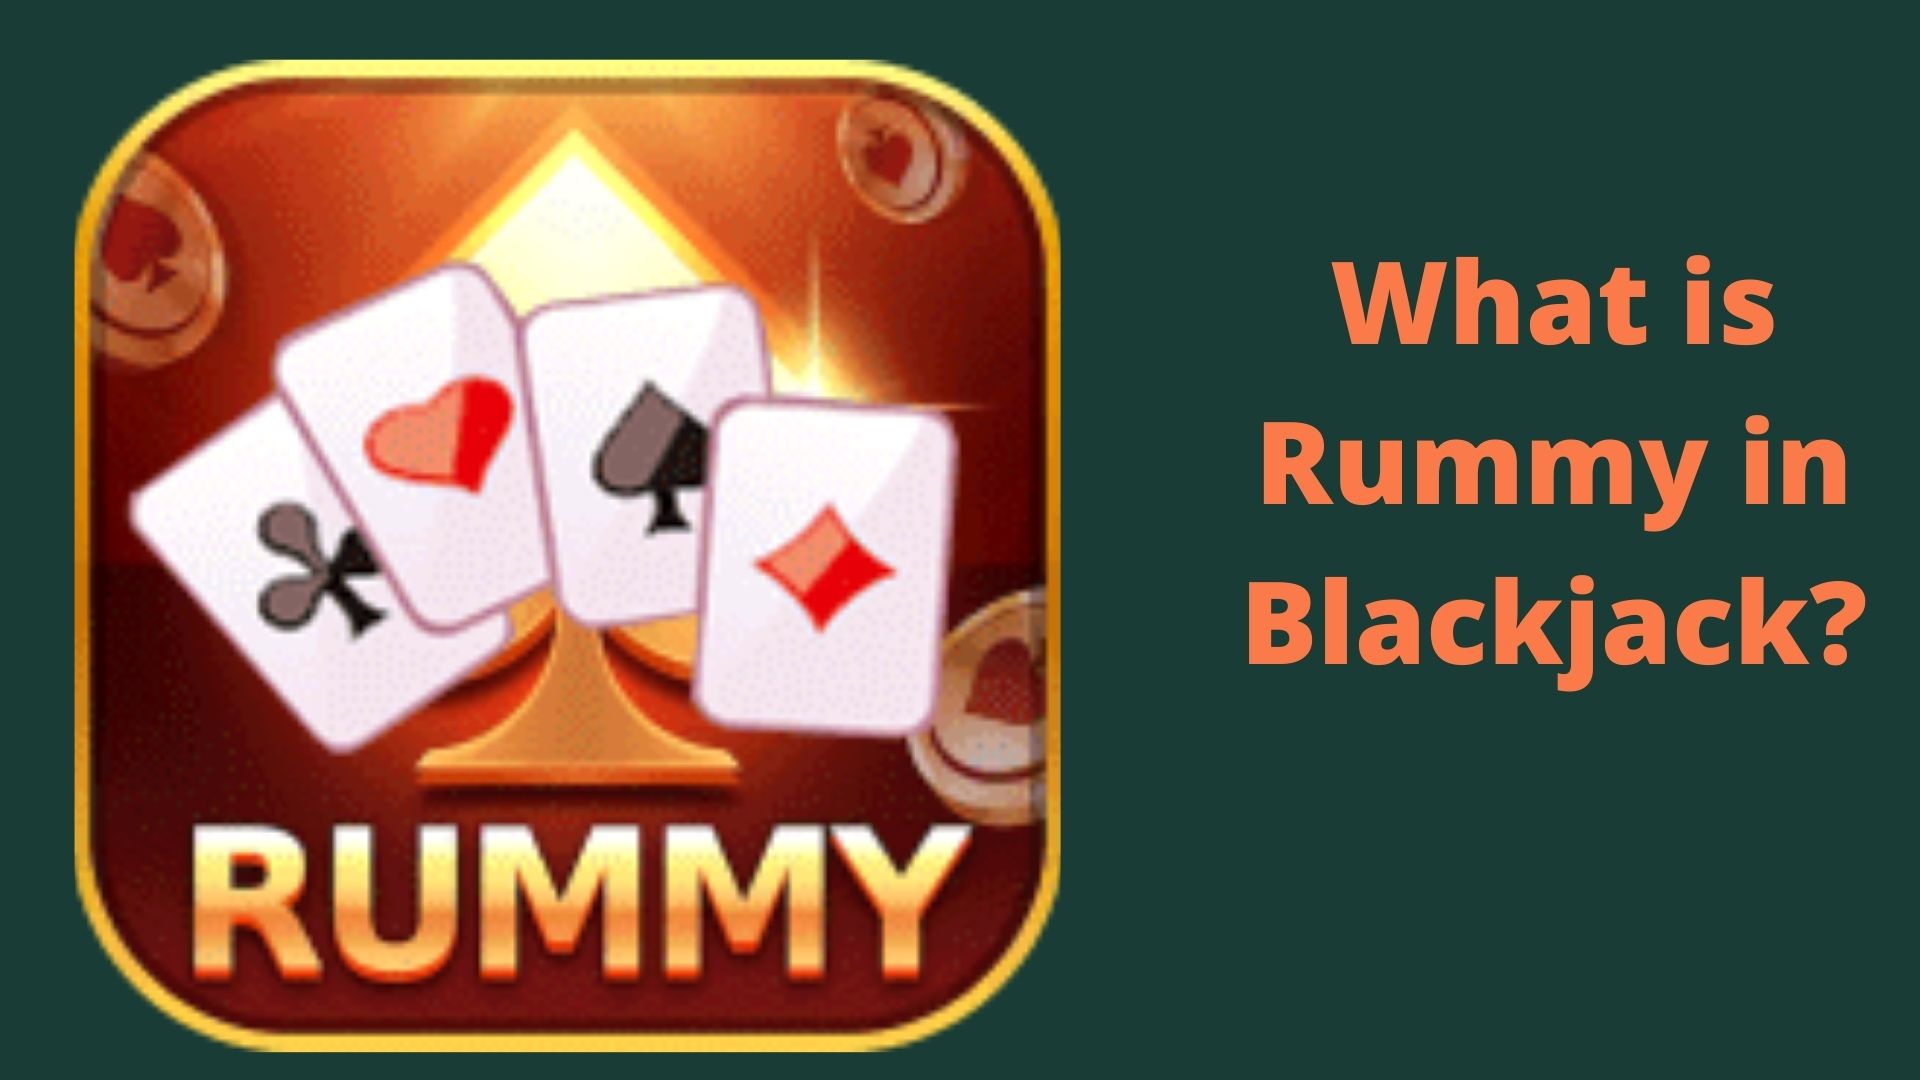 Rummy in Blackjack